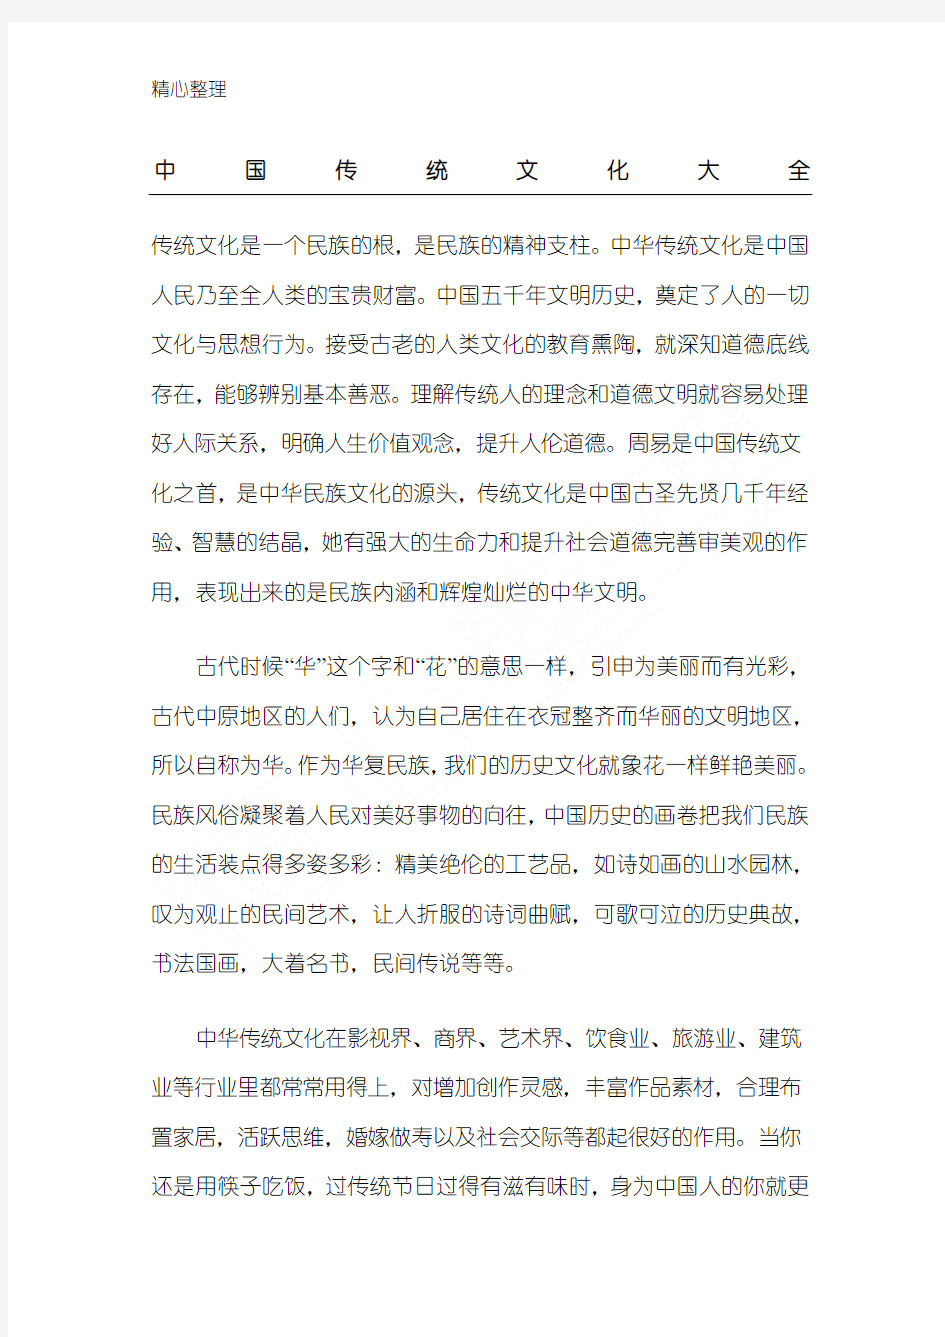 完整word版,中国传统文化大全,推荐文档